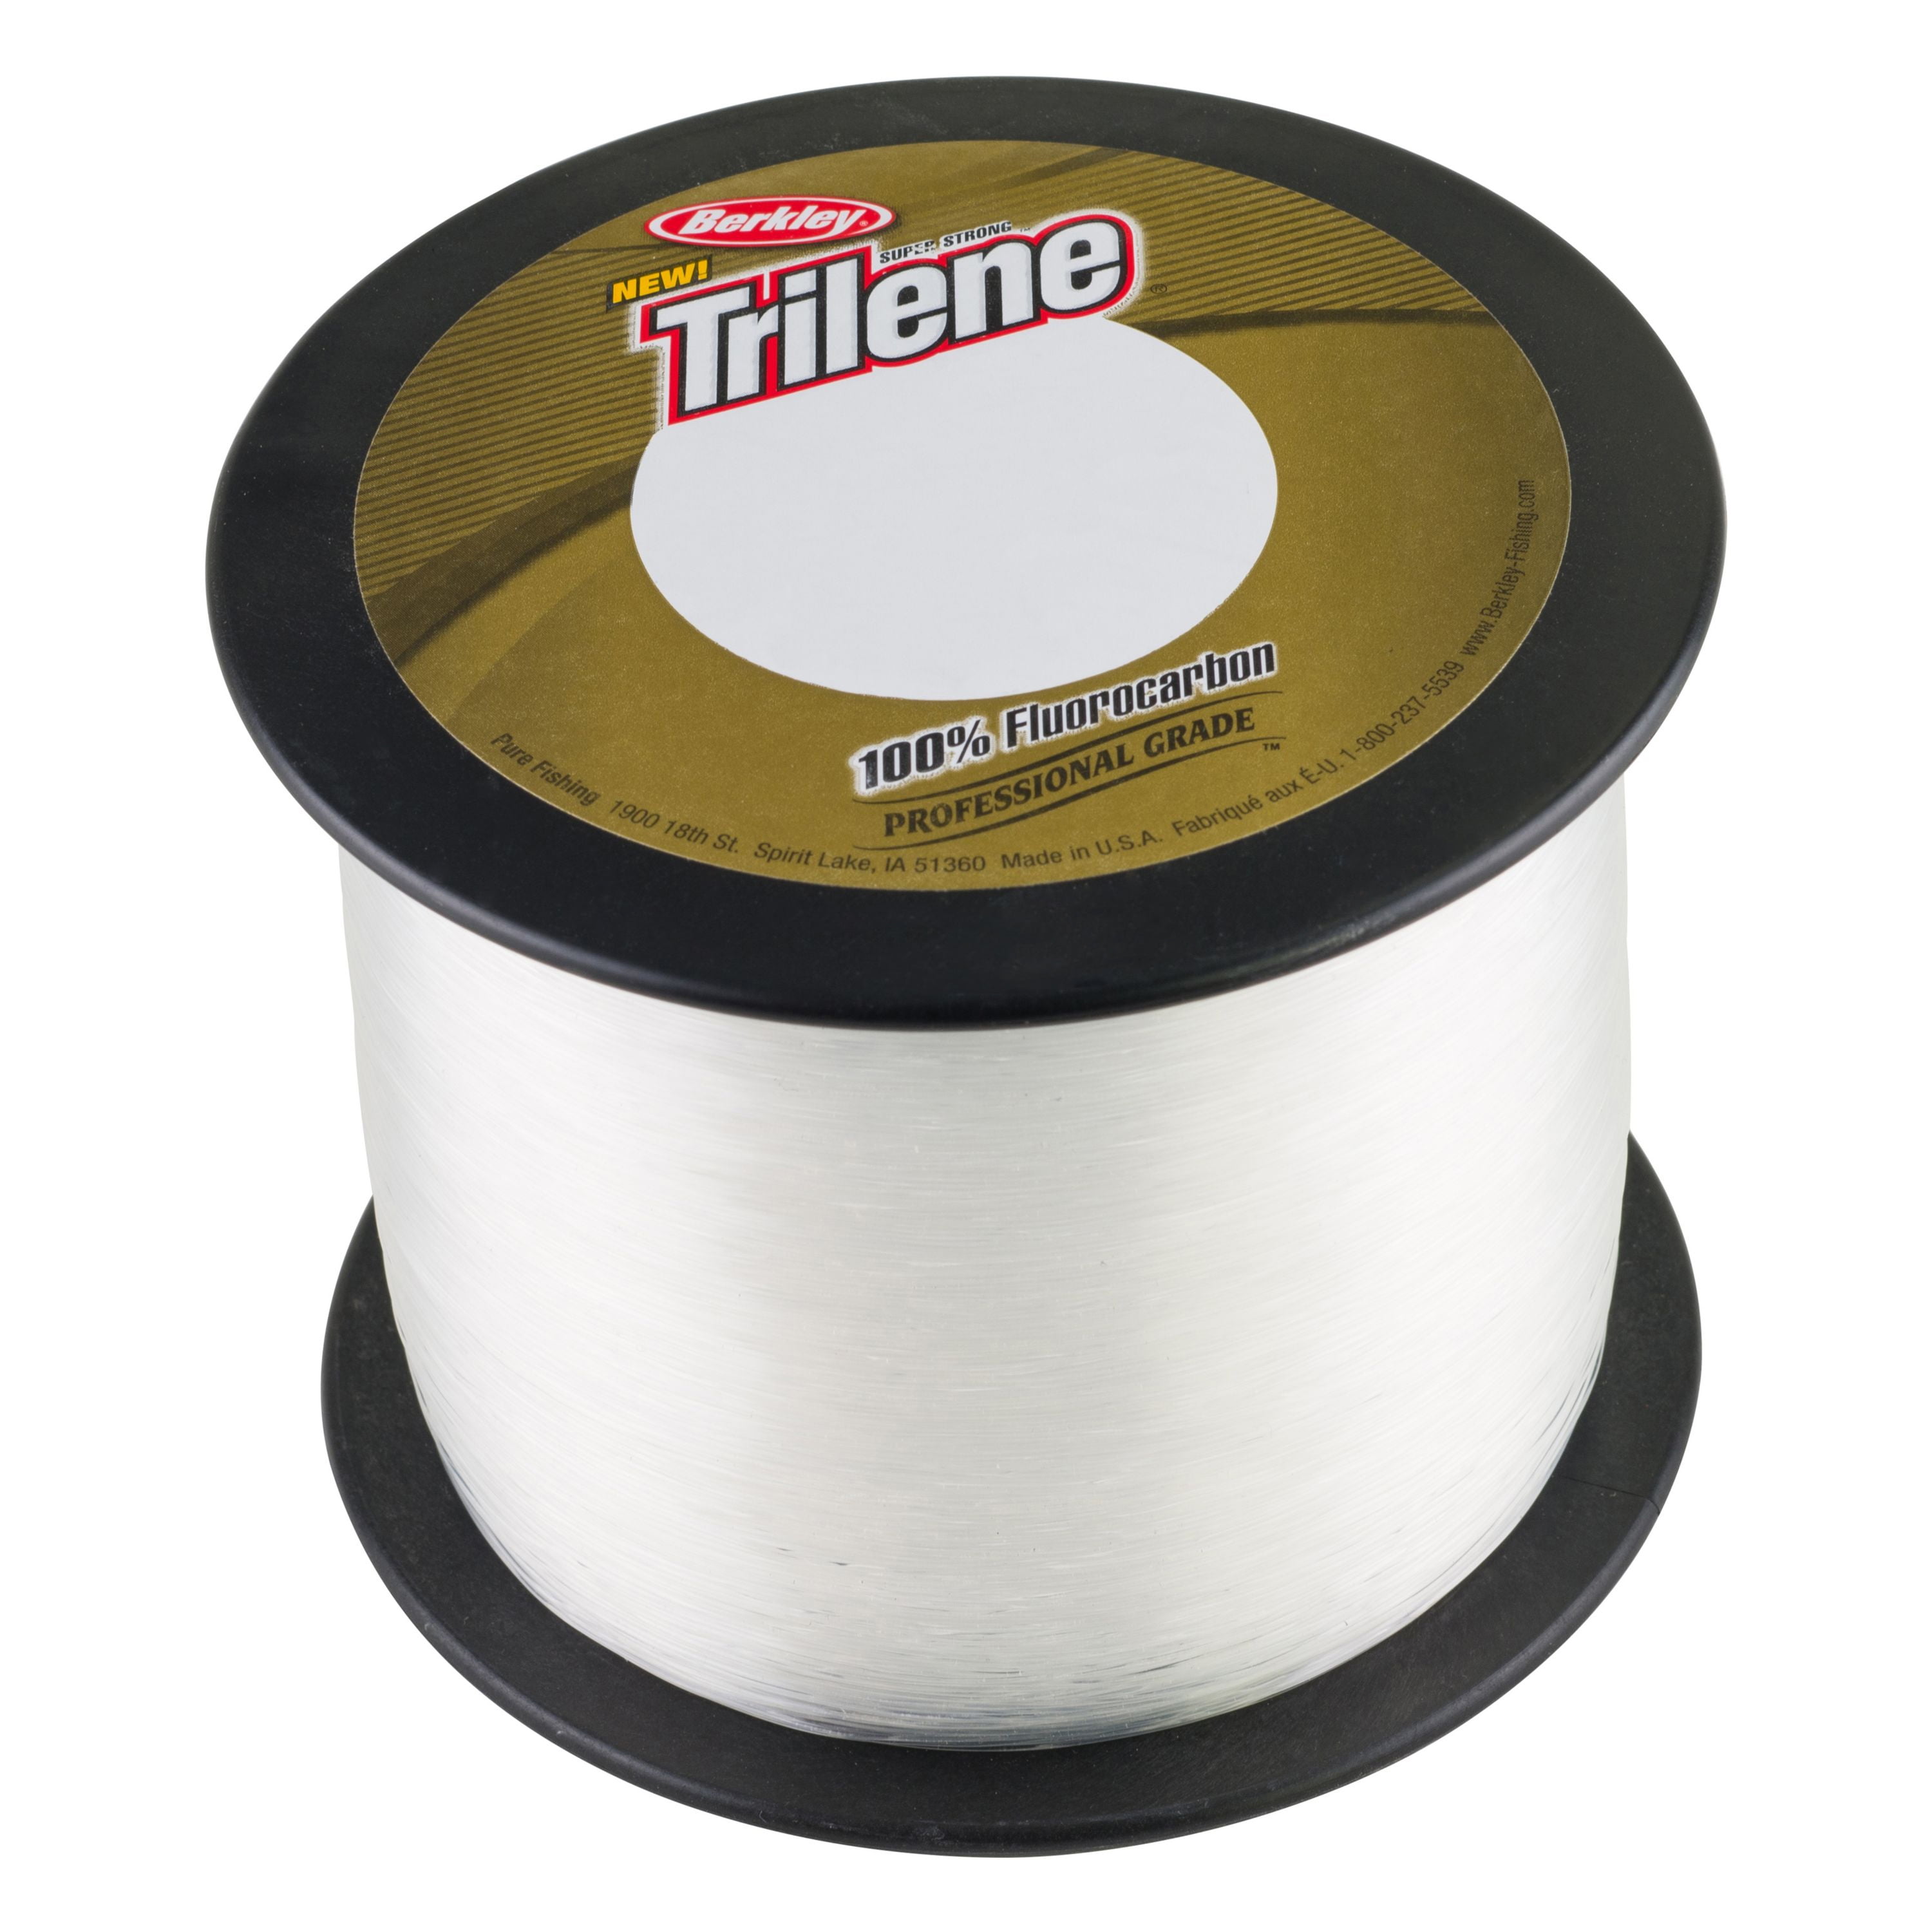 Berkley Trilene 100% Fluorocarbon - Clear - 20lb - 2000yd